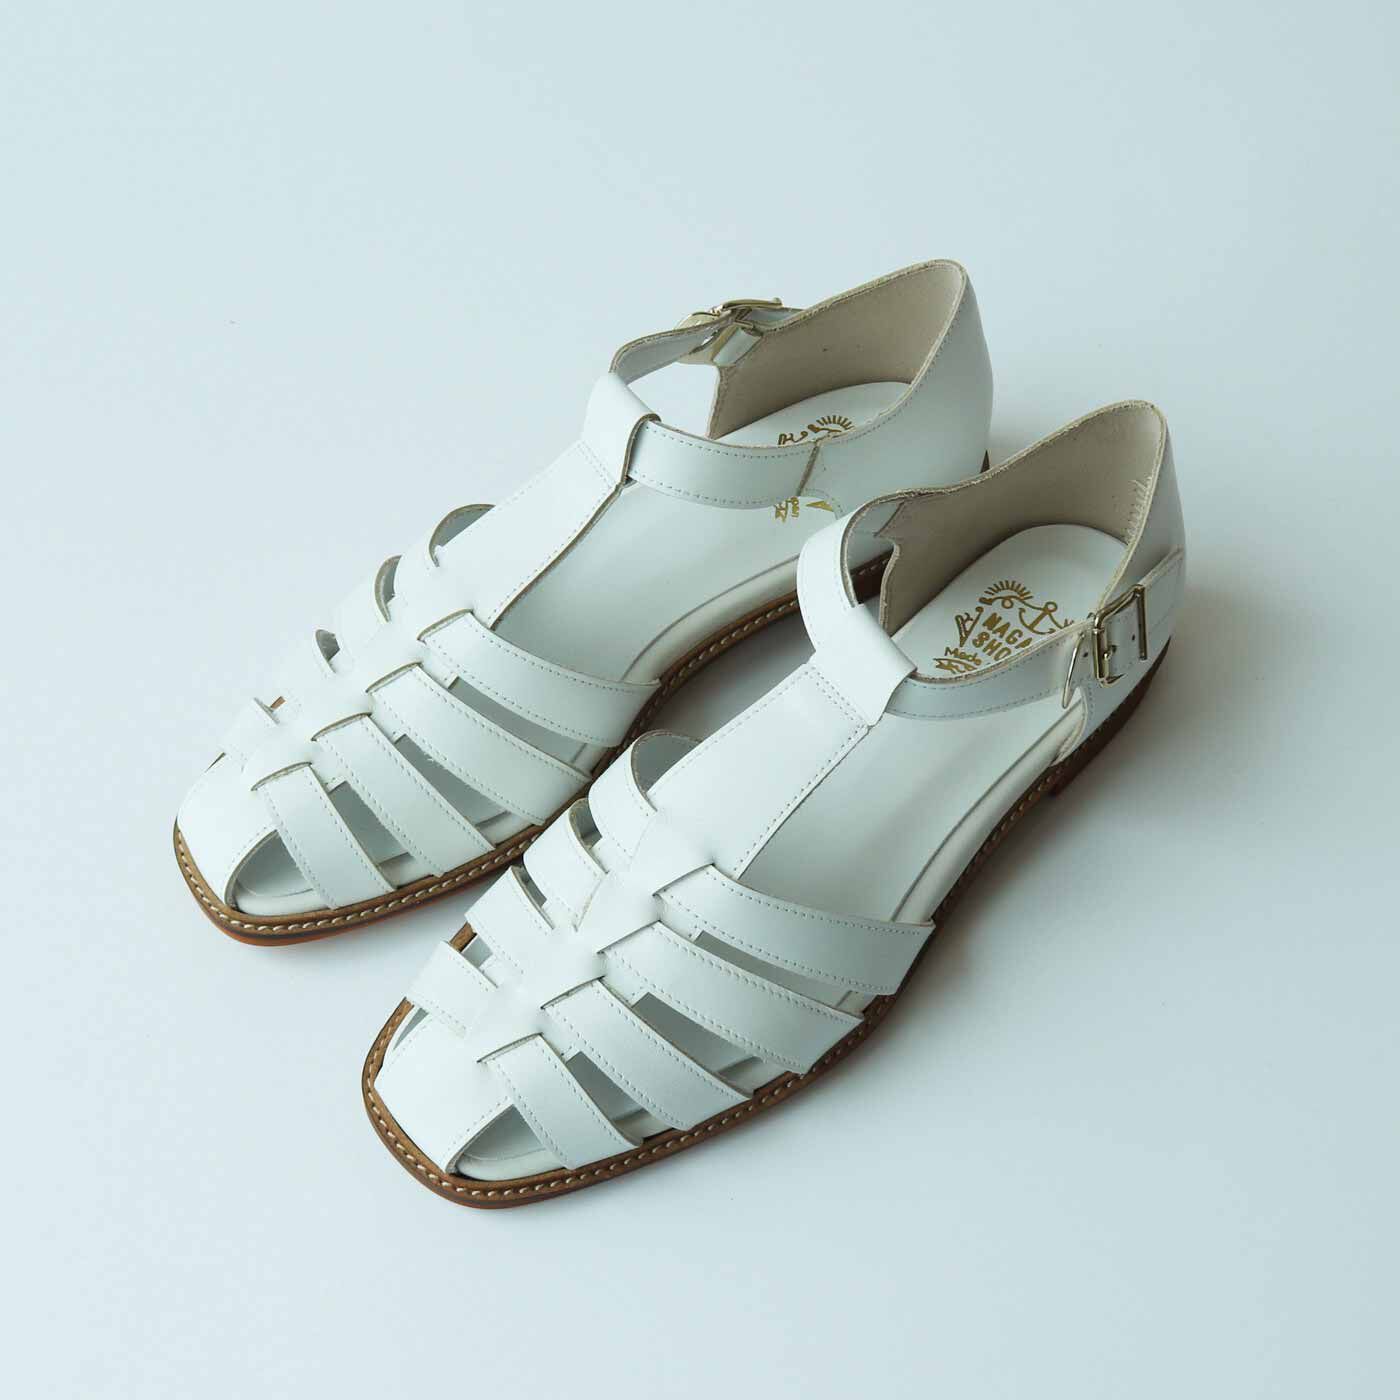 ＆Stories|靴デザイナーの理想で仕上げた 職人本革のフィッシャーマンシューズ〈ホワイト〉|サイズも10サイズ展開で21.5〜26cmと充実しています。